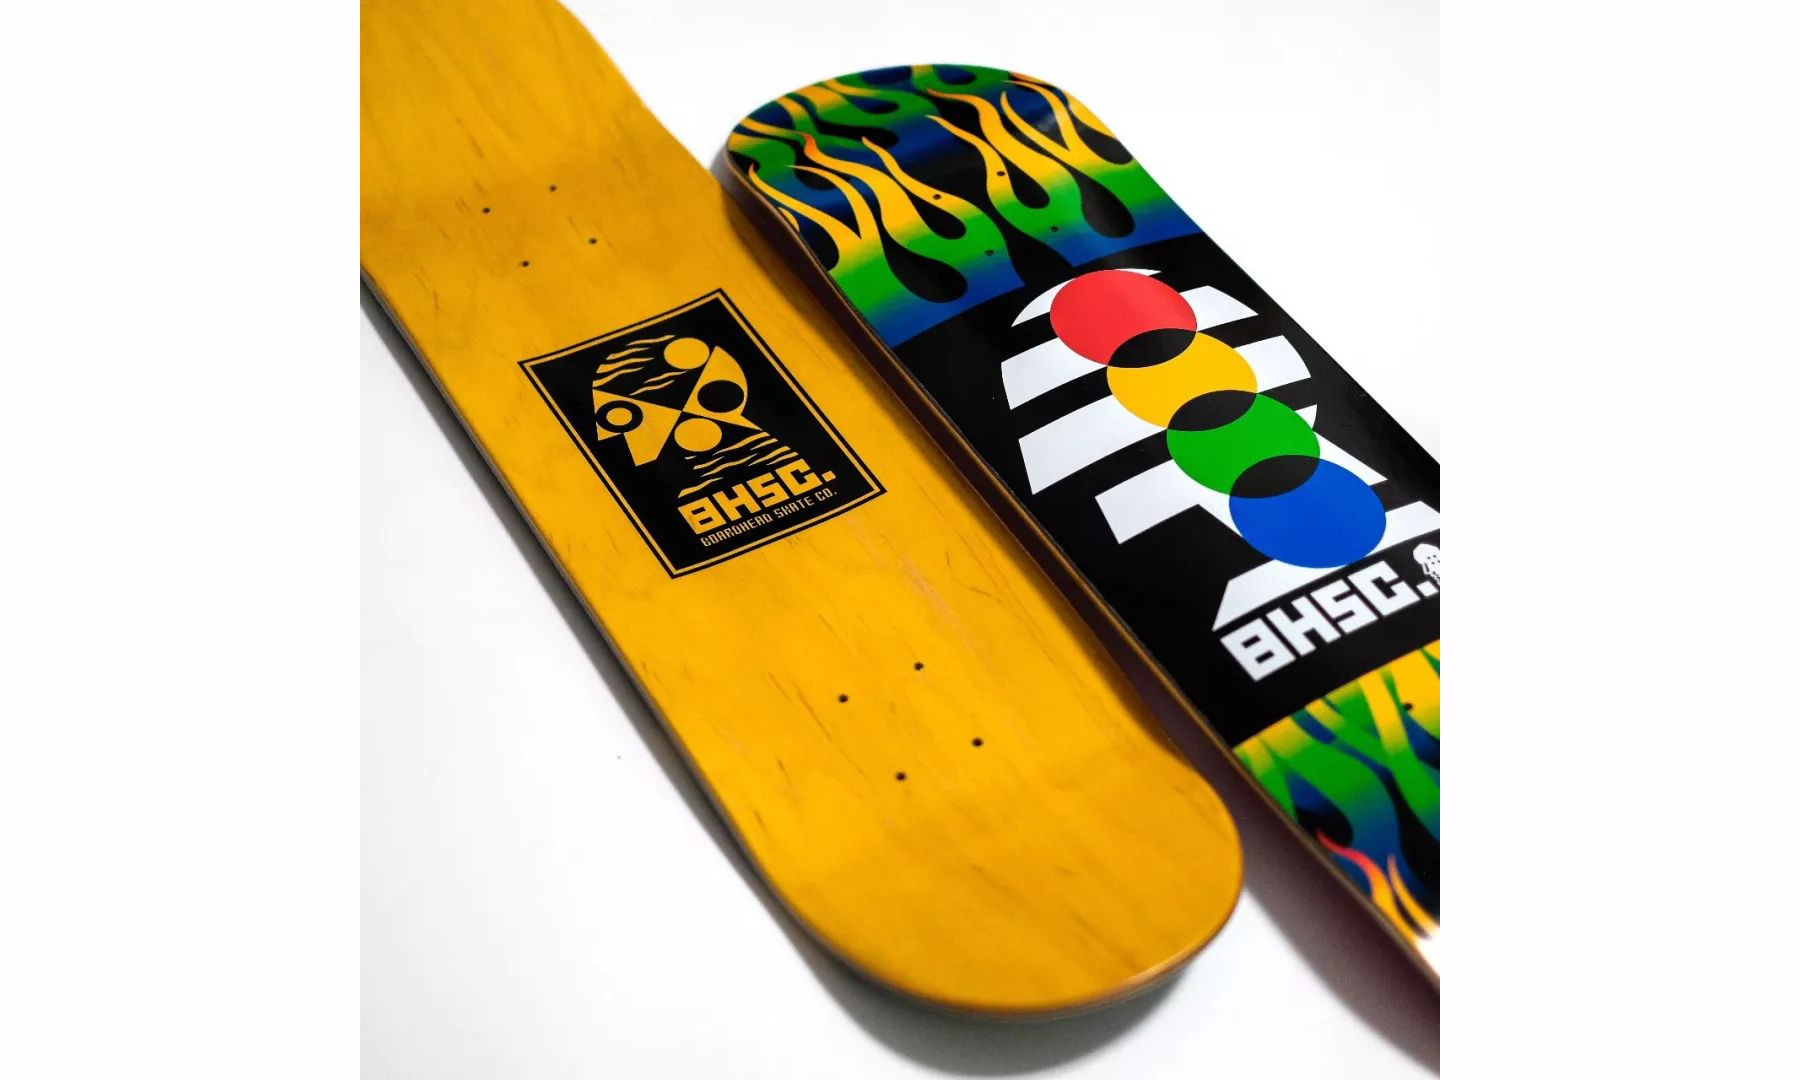 国内滑板品牌 BOARDHEAD 释出 “GEOMETRIC DESIGN” 系列板面 – NOWRE现客